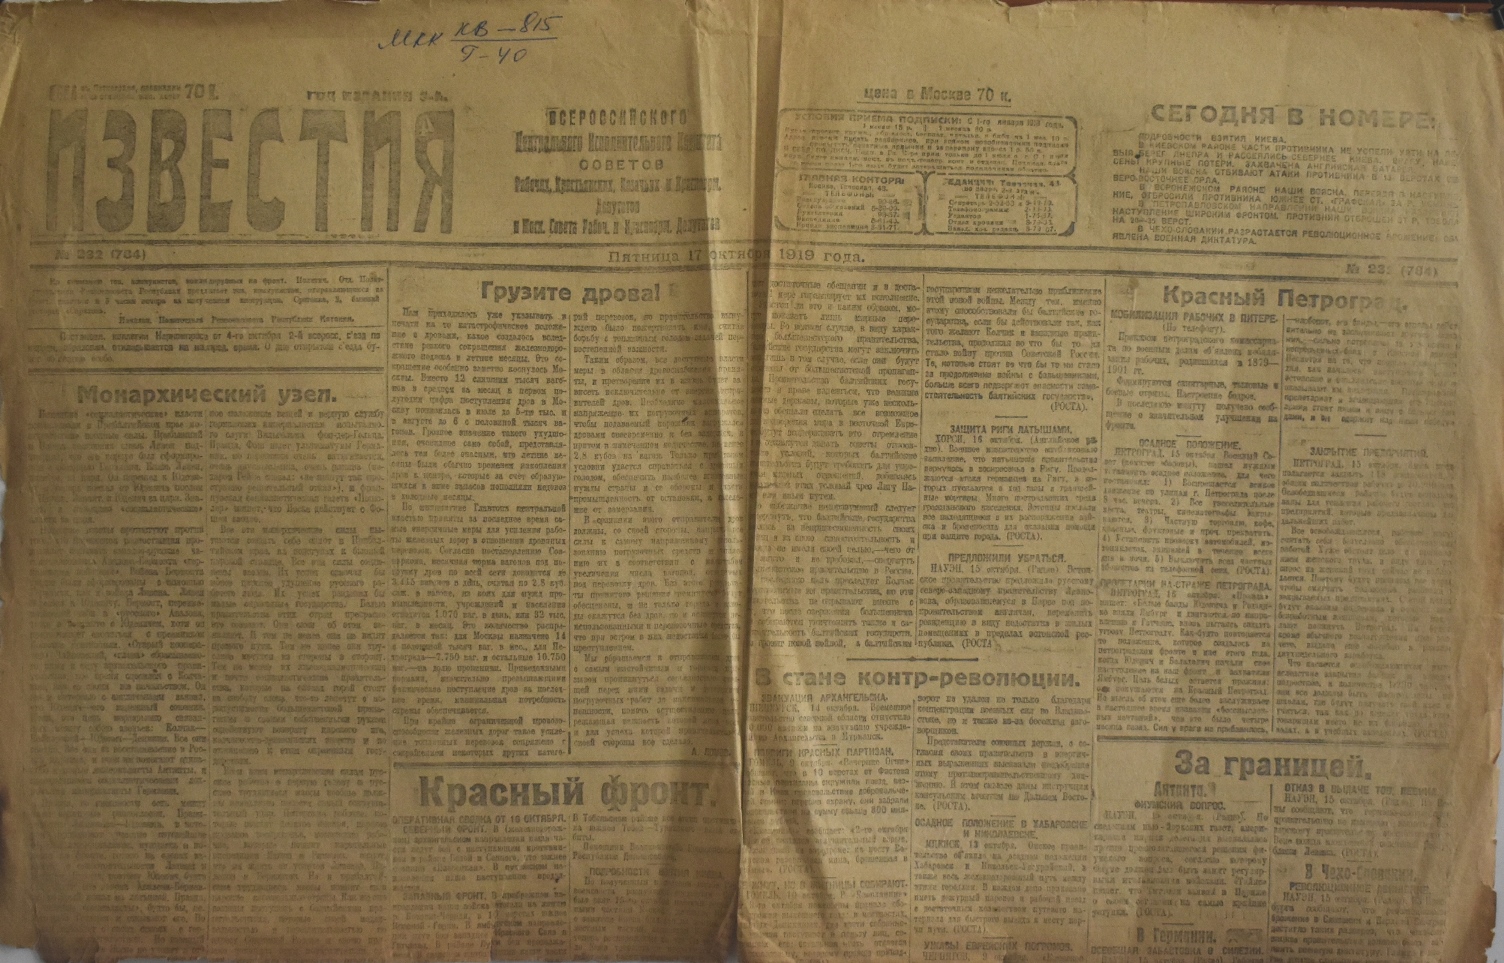 Газета " Известия" (фрагмент) № 232 від  17 жовтня 1919 року